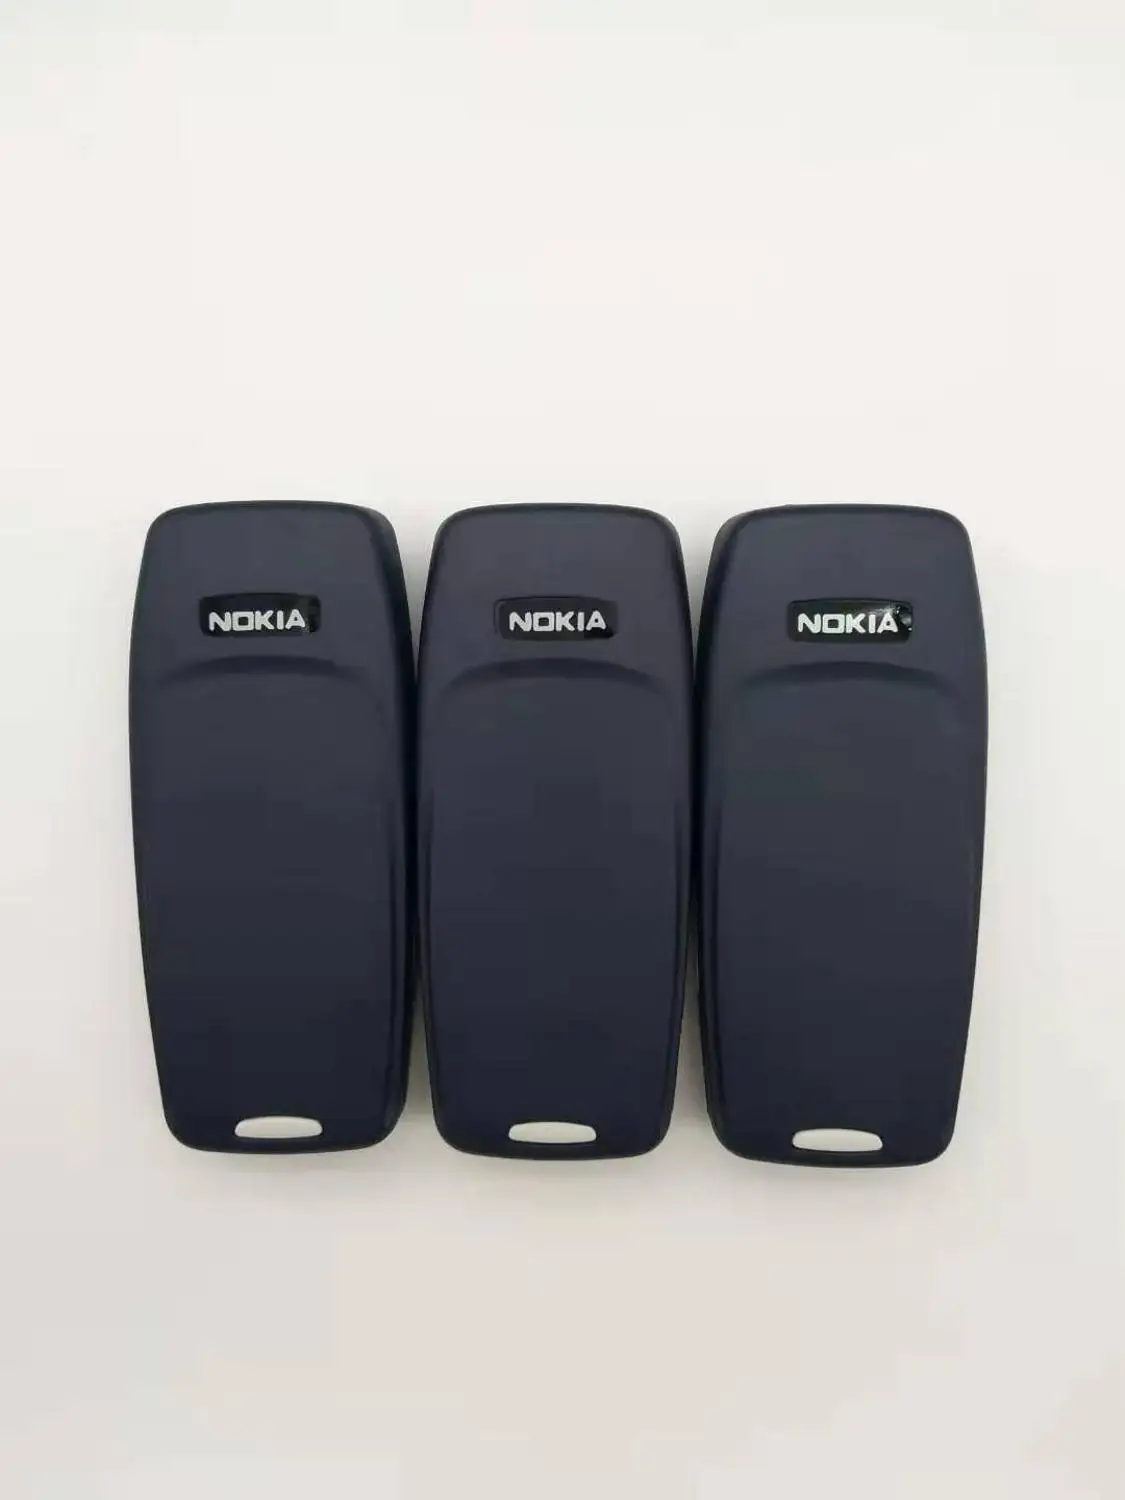 Отремонтированный Nokia 3310 дешевый телефон разблокированный GSM 900/1800 с русской и арабской клавиатурой многоязычный 1 год гарантии